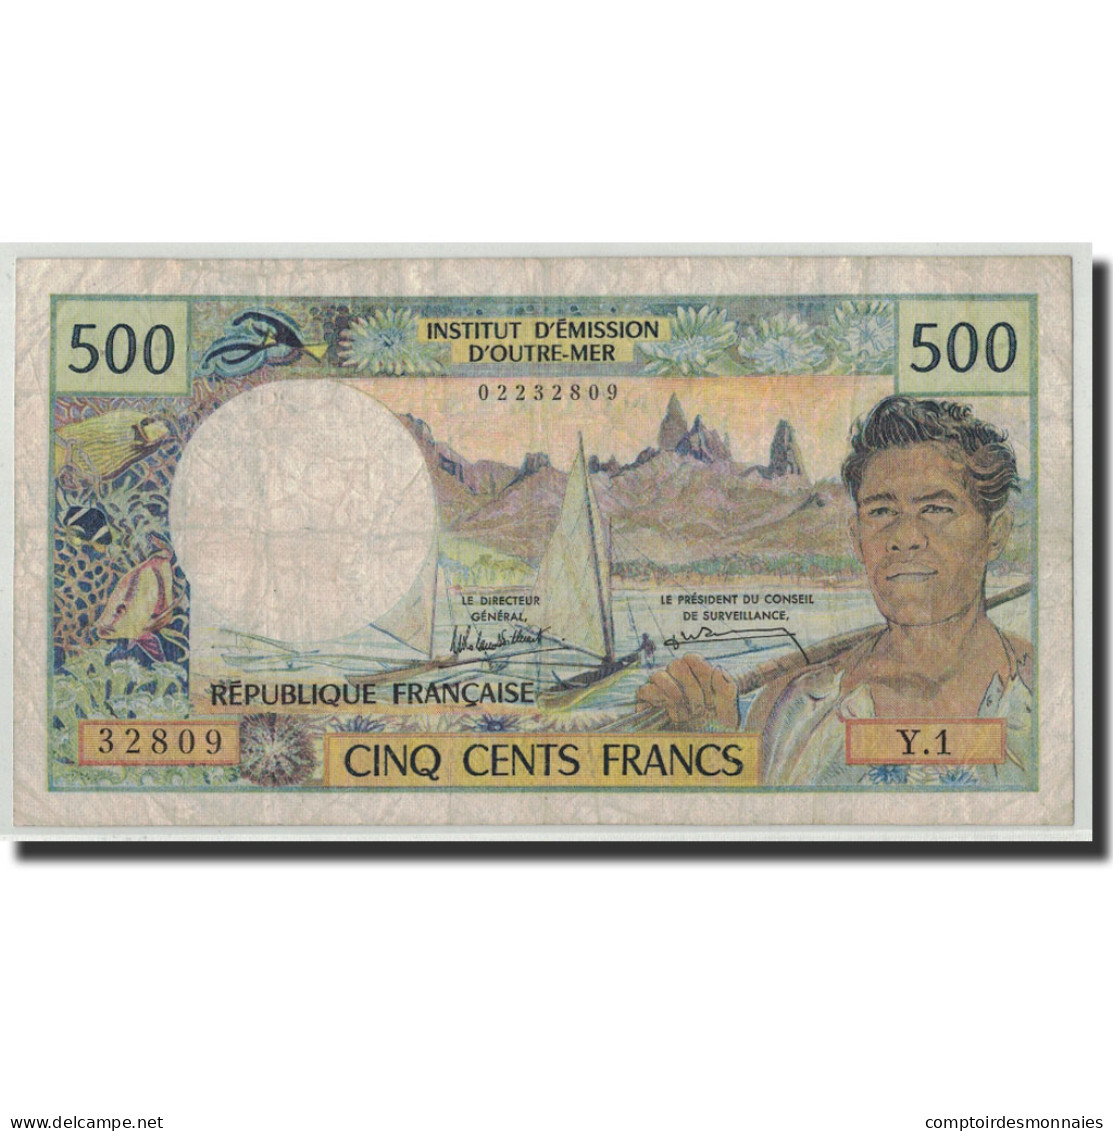 Billet, Nouvelle-Calédonie, 500 Francs, Undated (1969-92), KM:60e, TB - Nouvelle-Calédonie 1873-1985